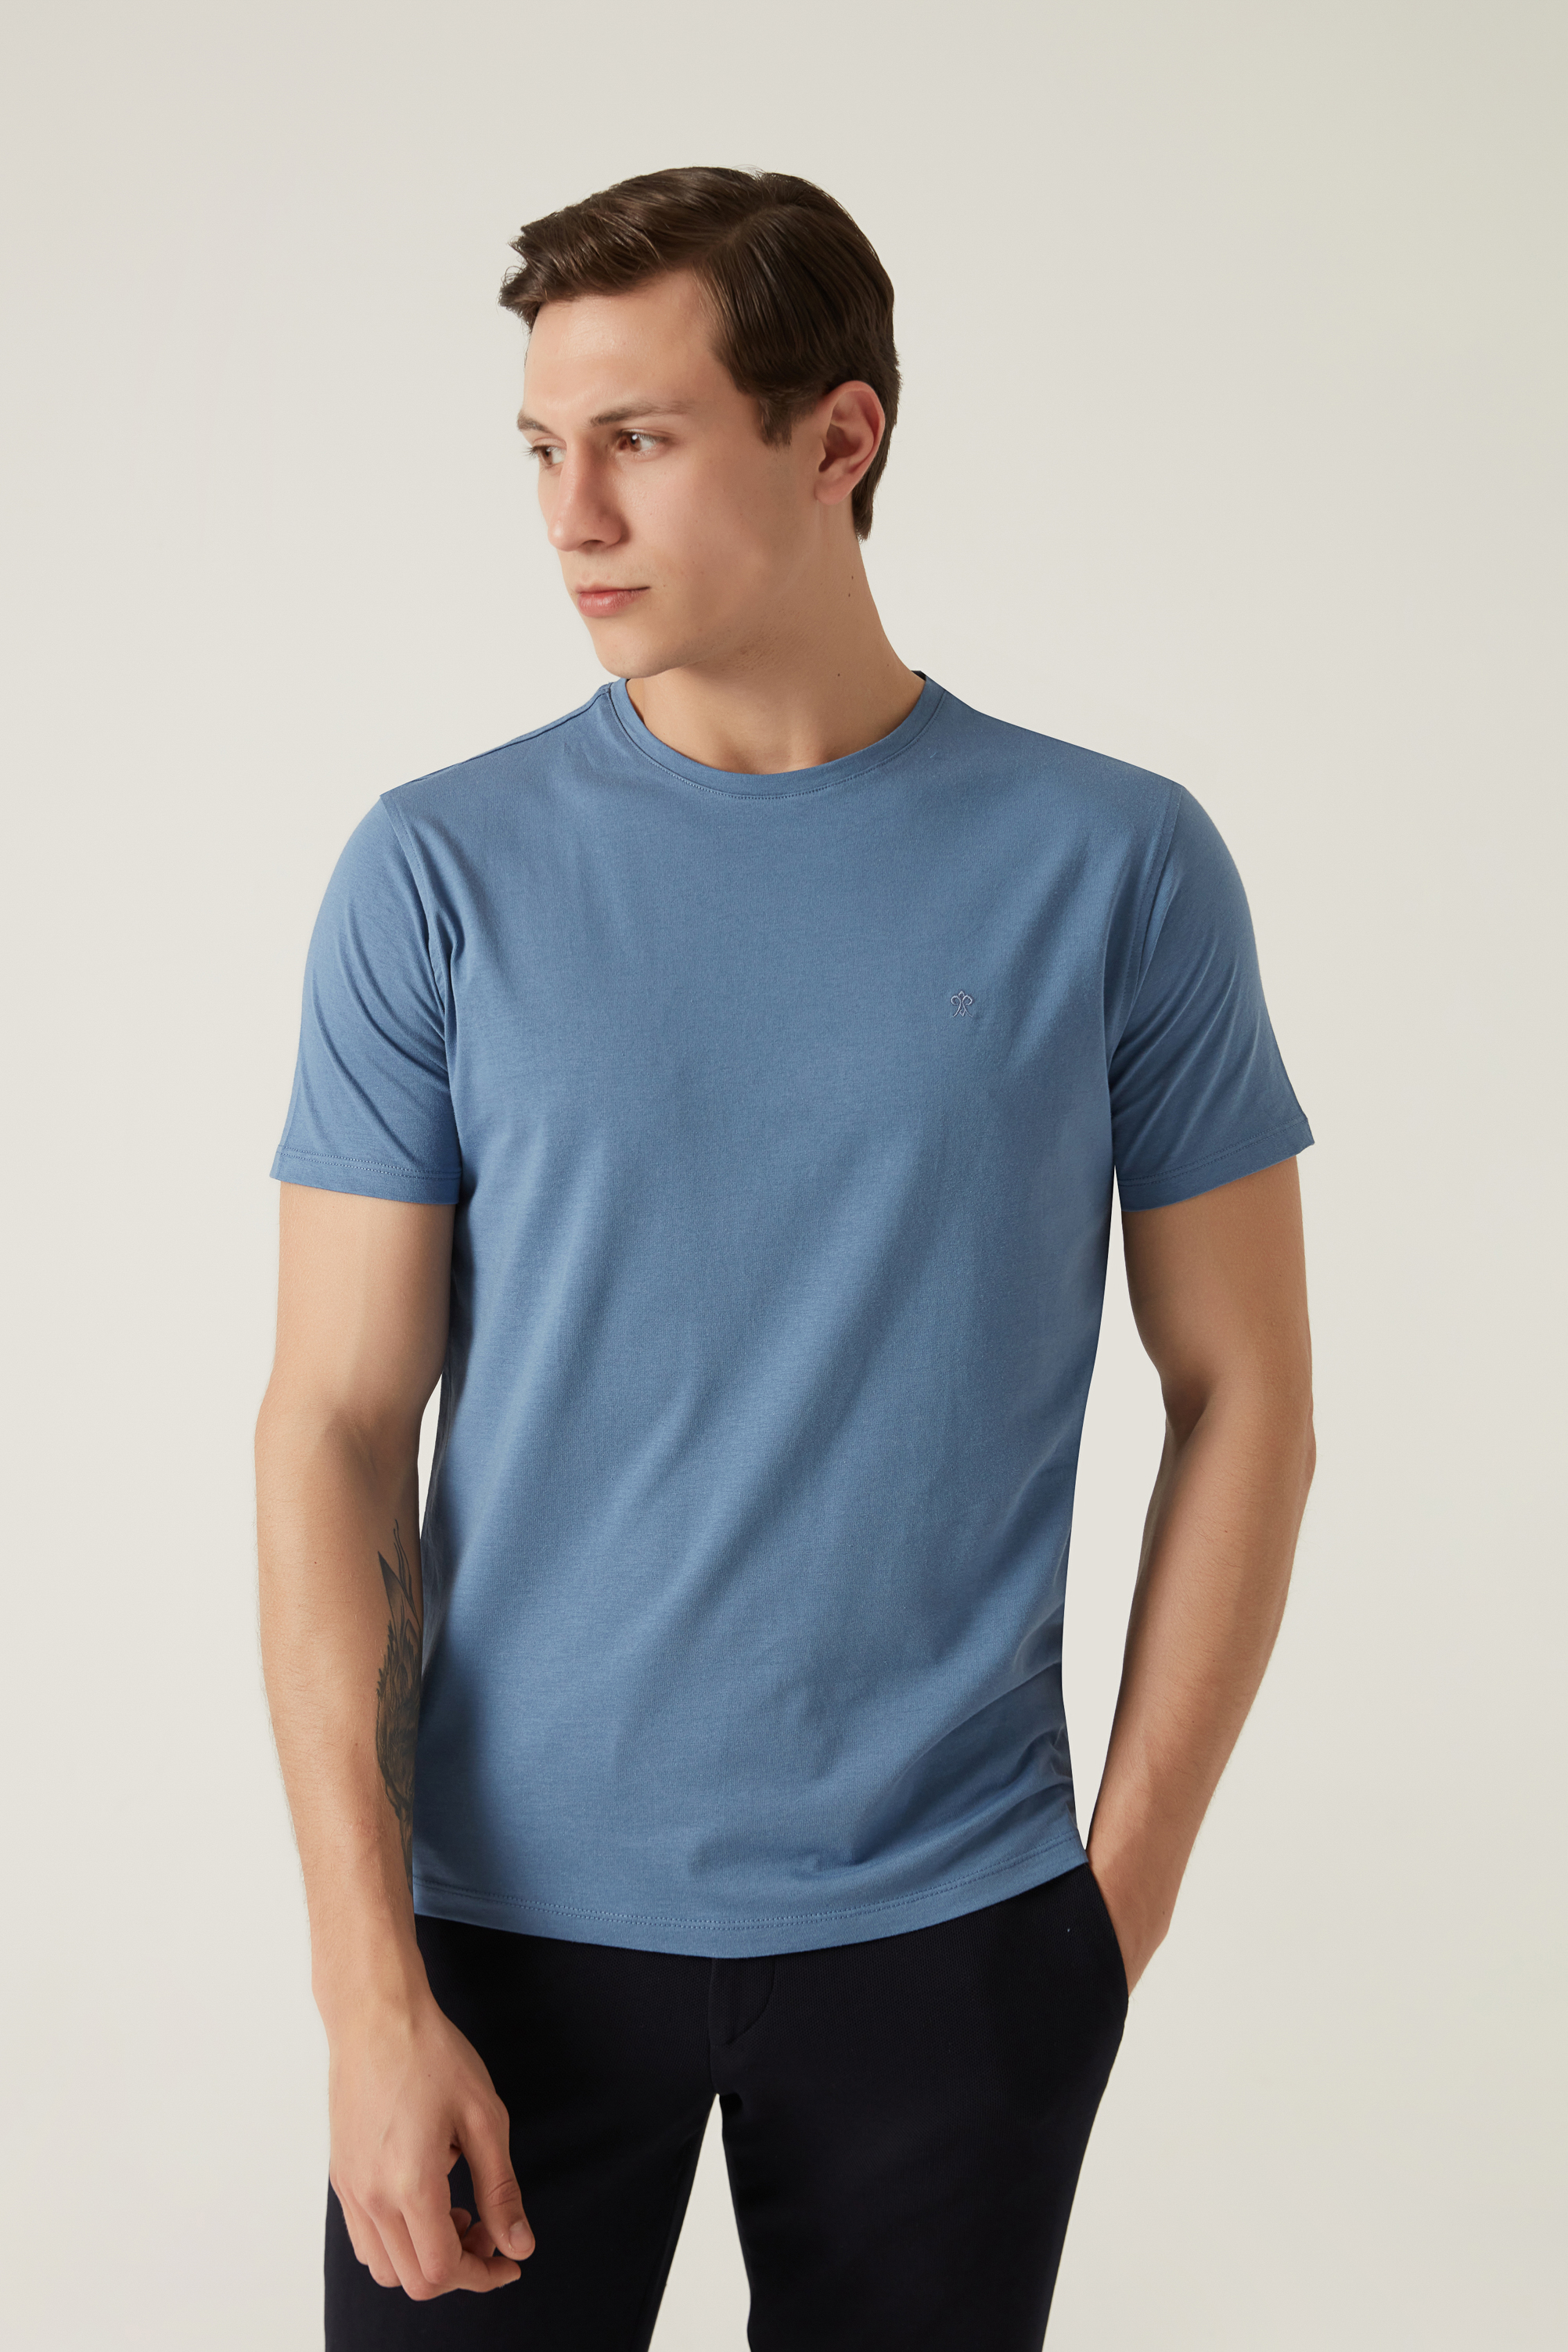 Damat Tween Damat Mavi T-shirt. 1